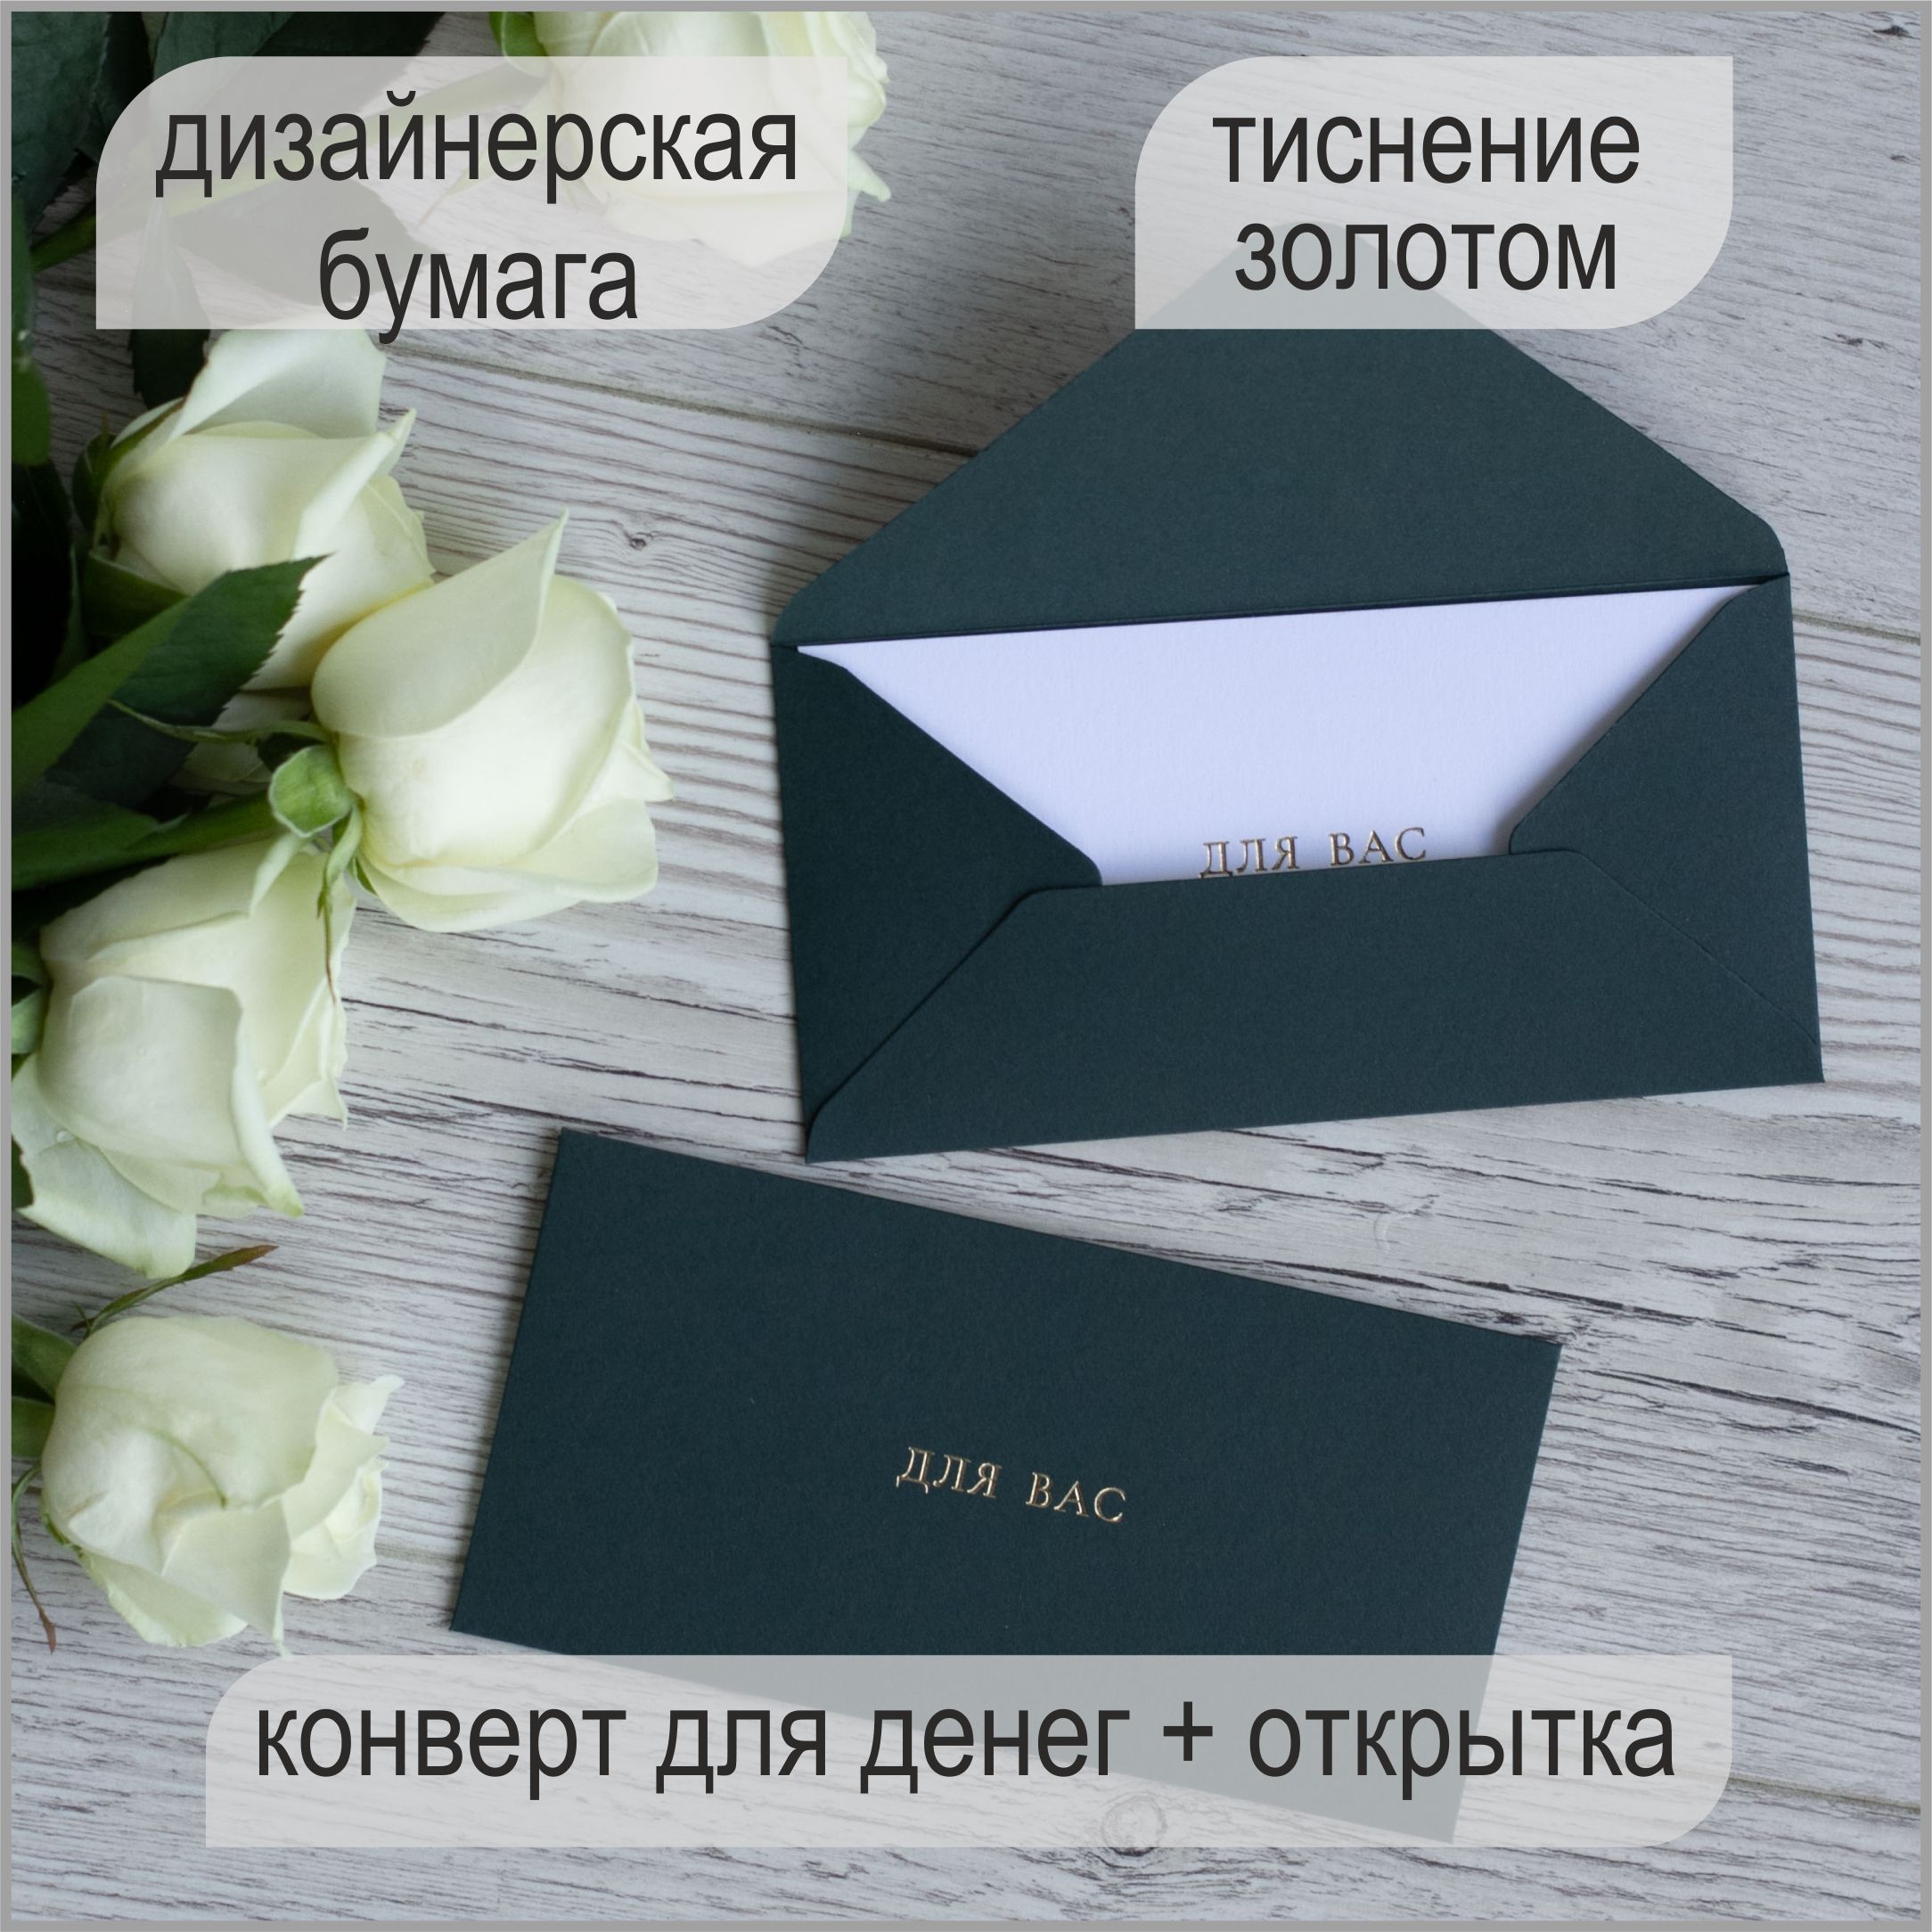 О компании апекс124.рф — интернет магазин подарков